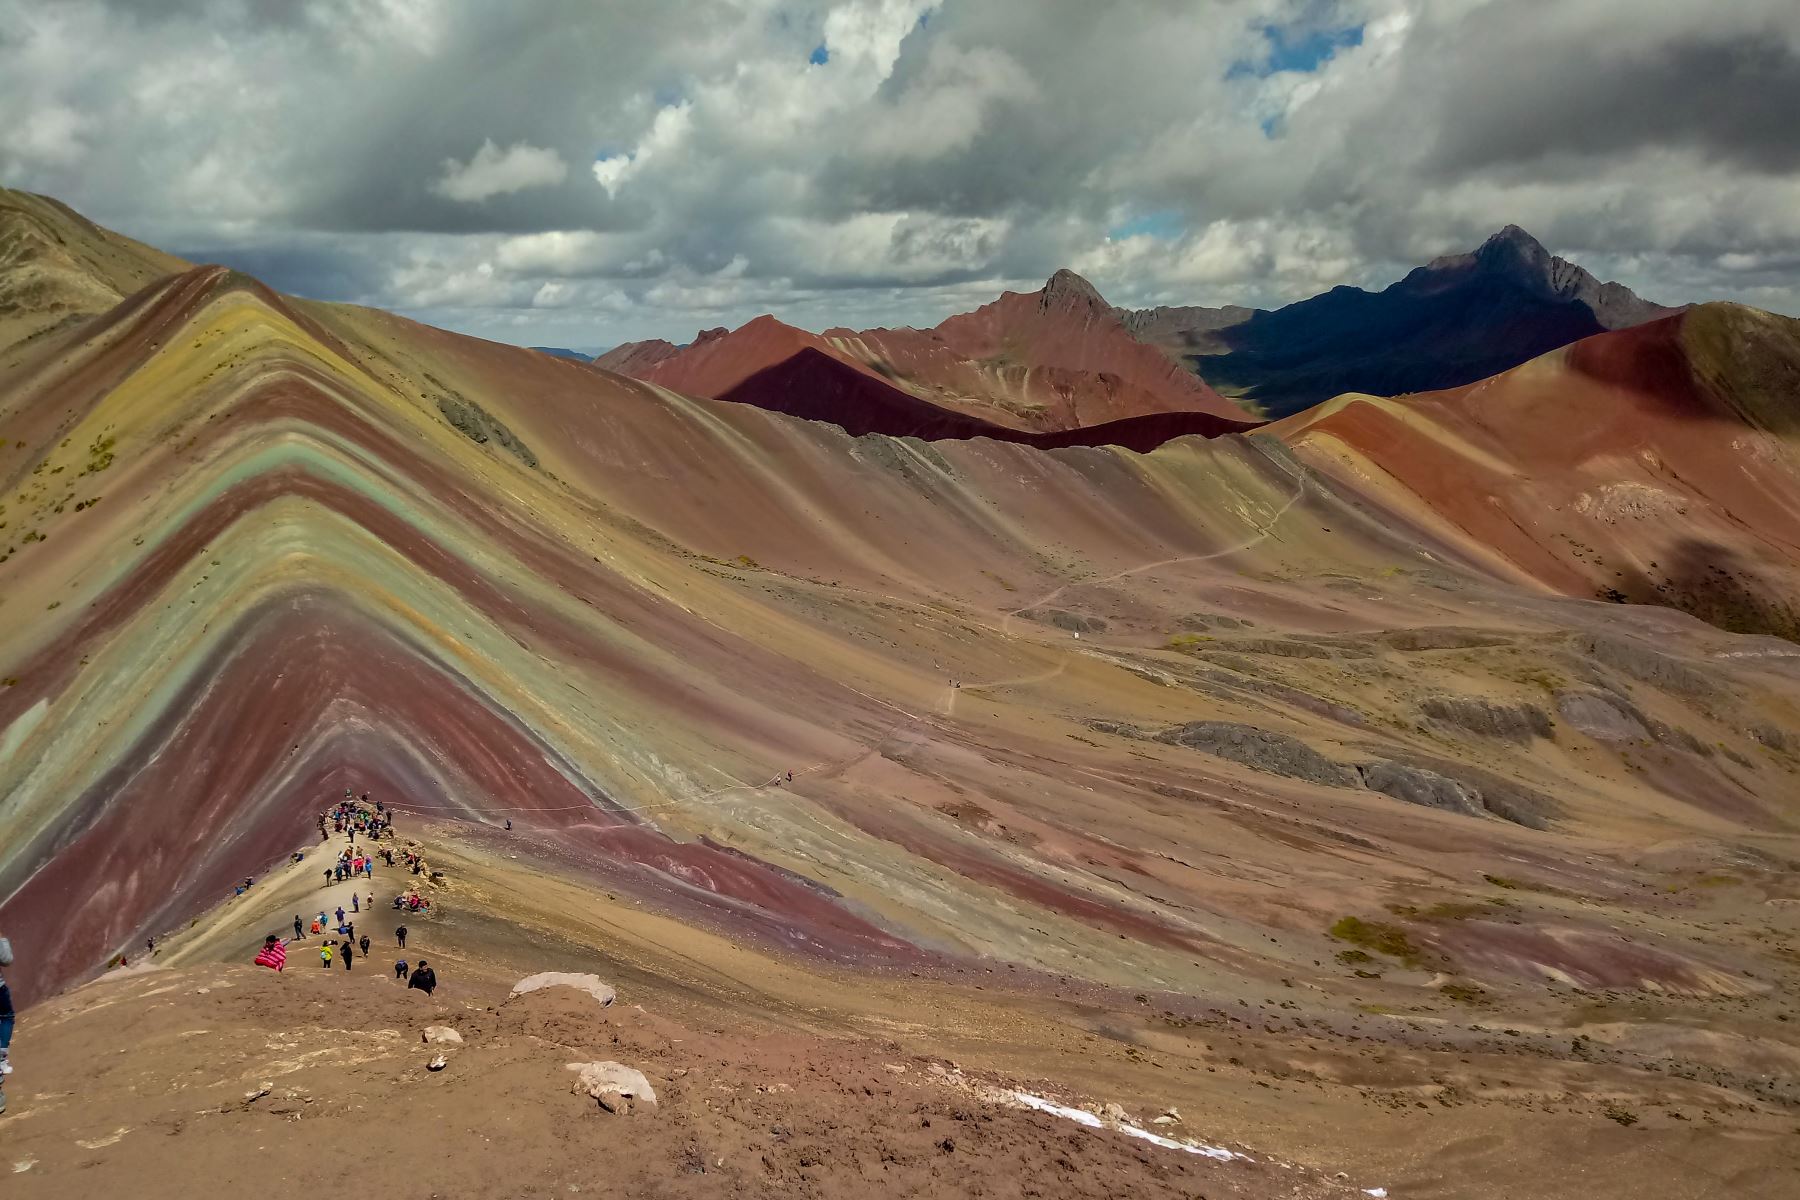 600 turistas visitan diariamente la Montaña Colores por esta ruta. Foto: ANDINA/proyecto Minam-CAF